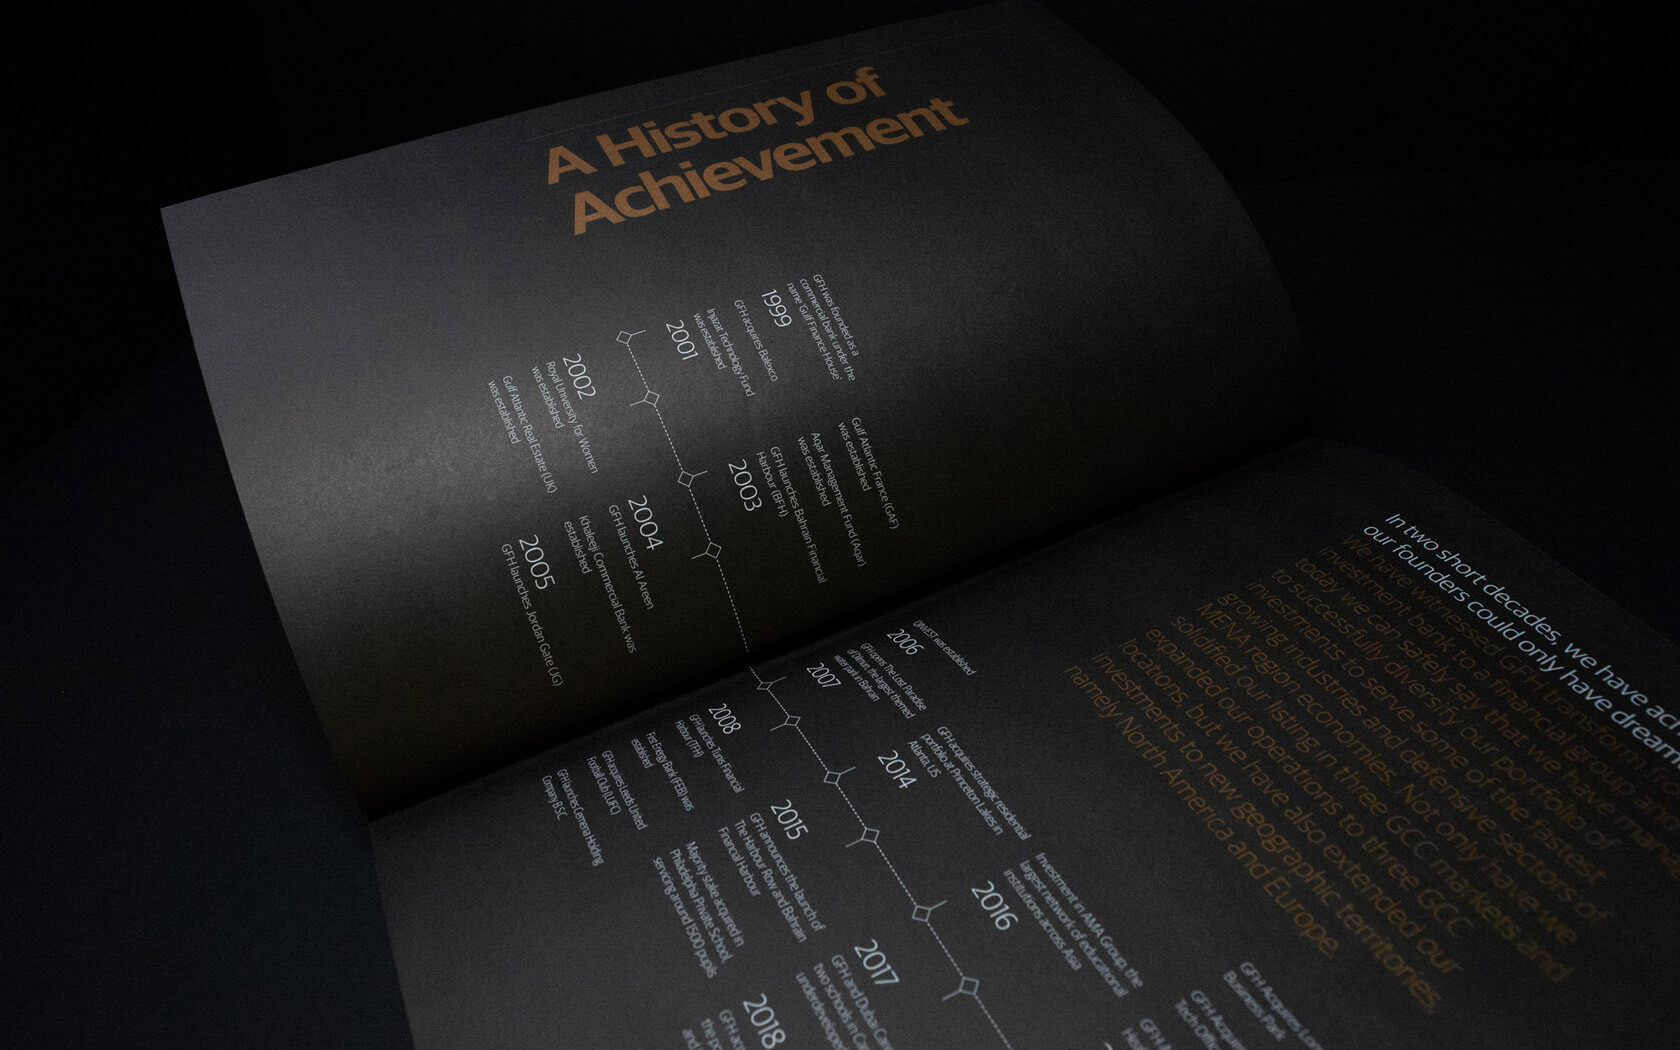 GFH Annual Report 2019. History of achievement spread